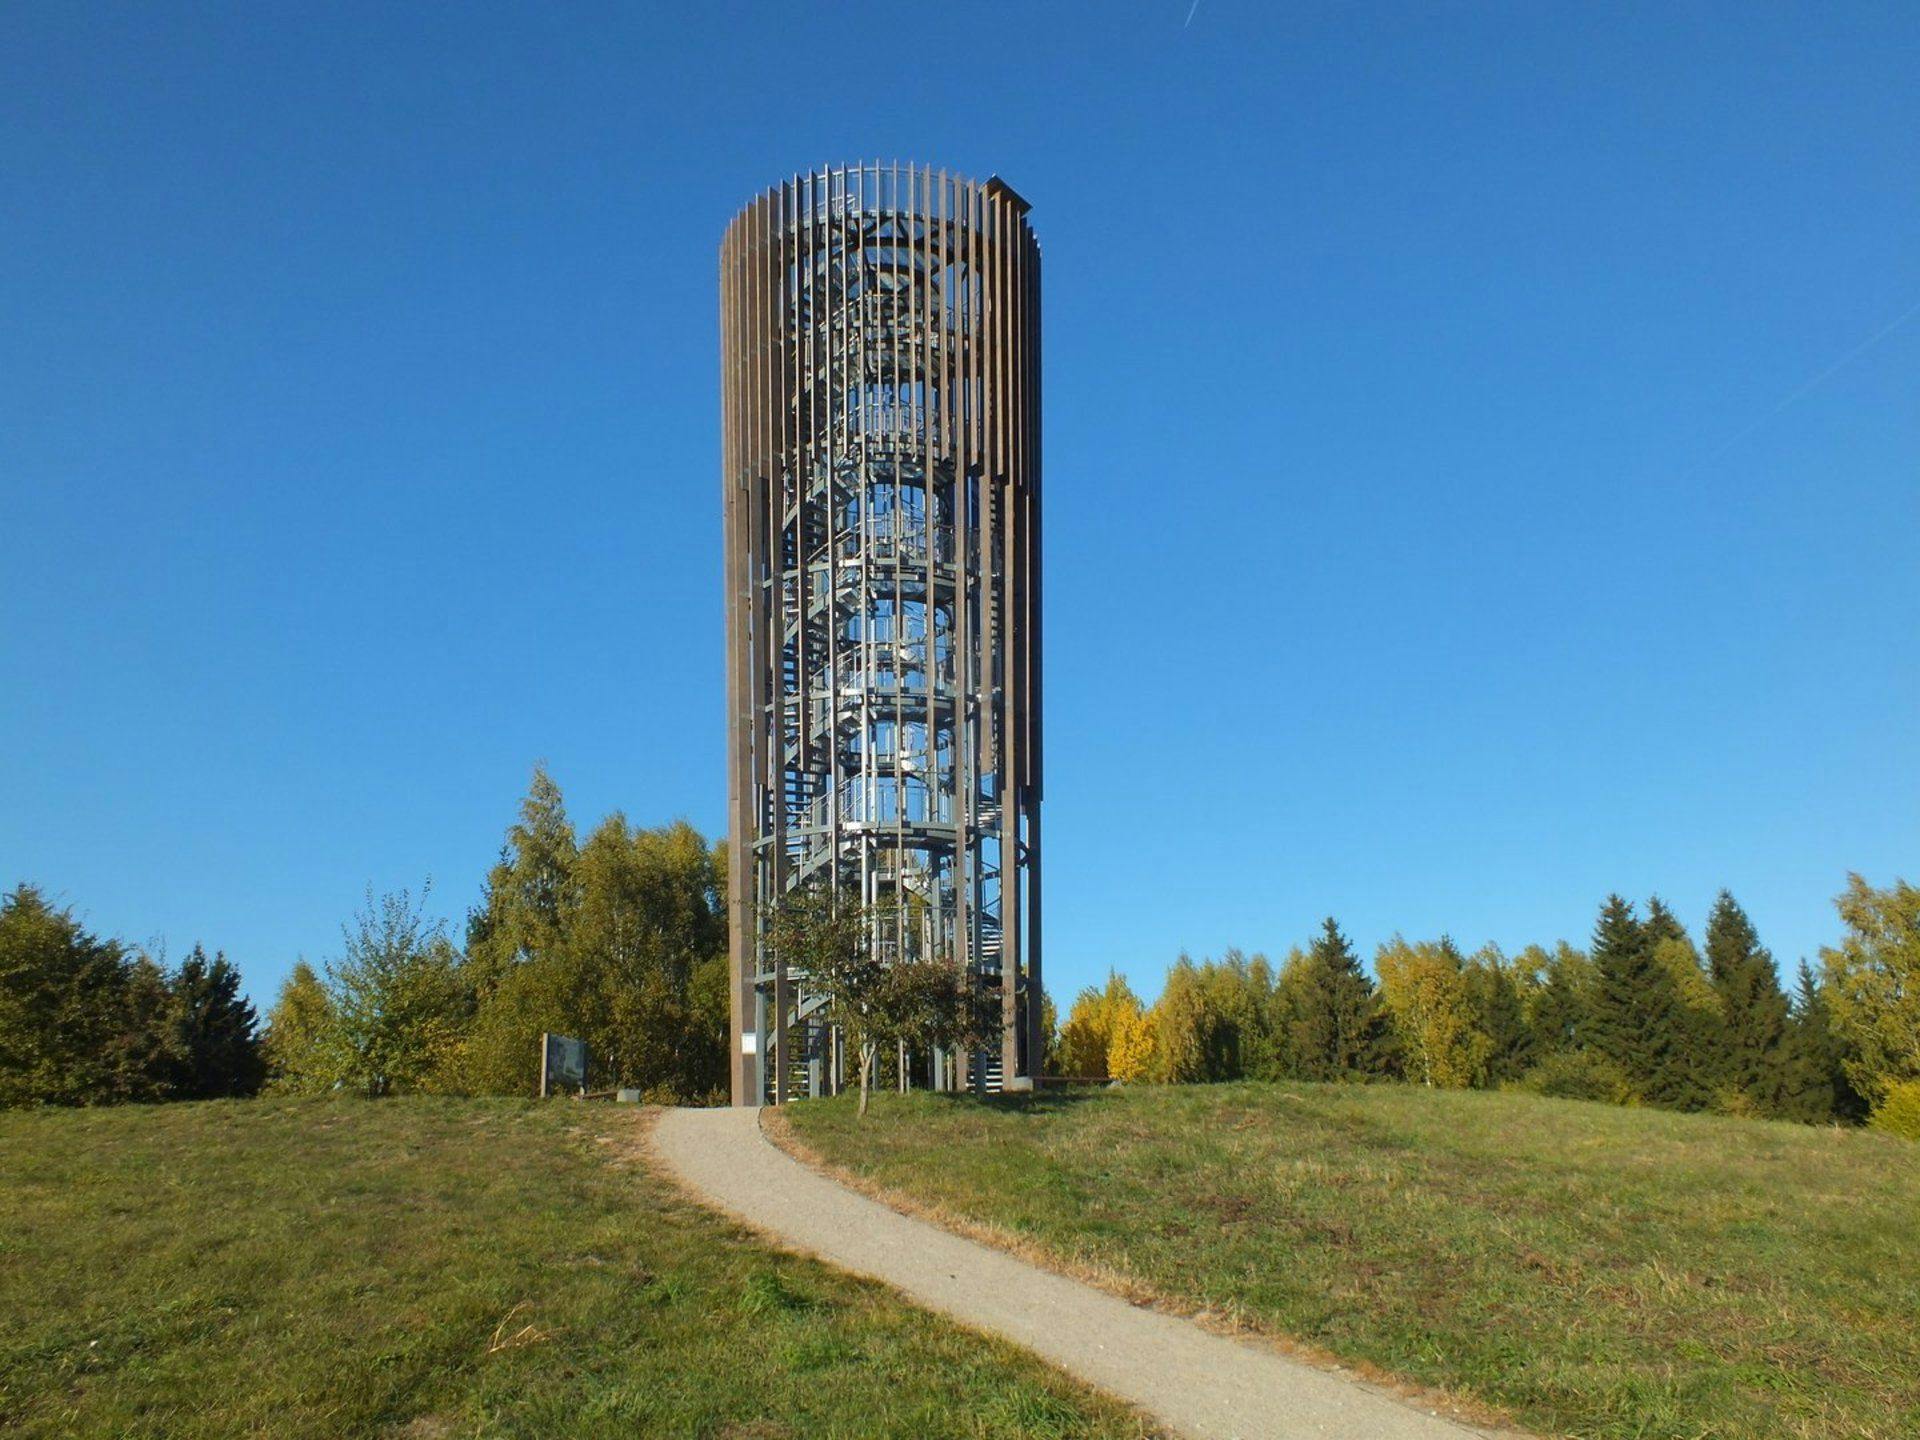 Šiaulės apžvalgos bokštas